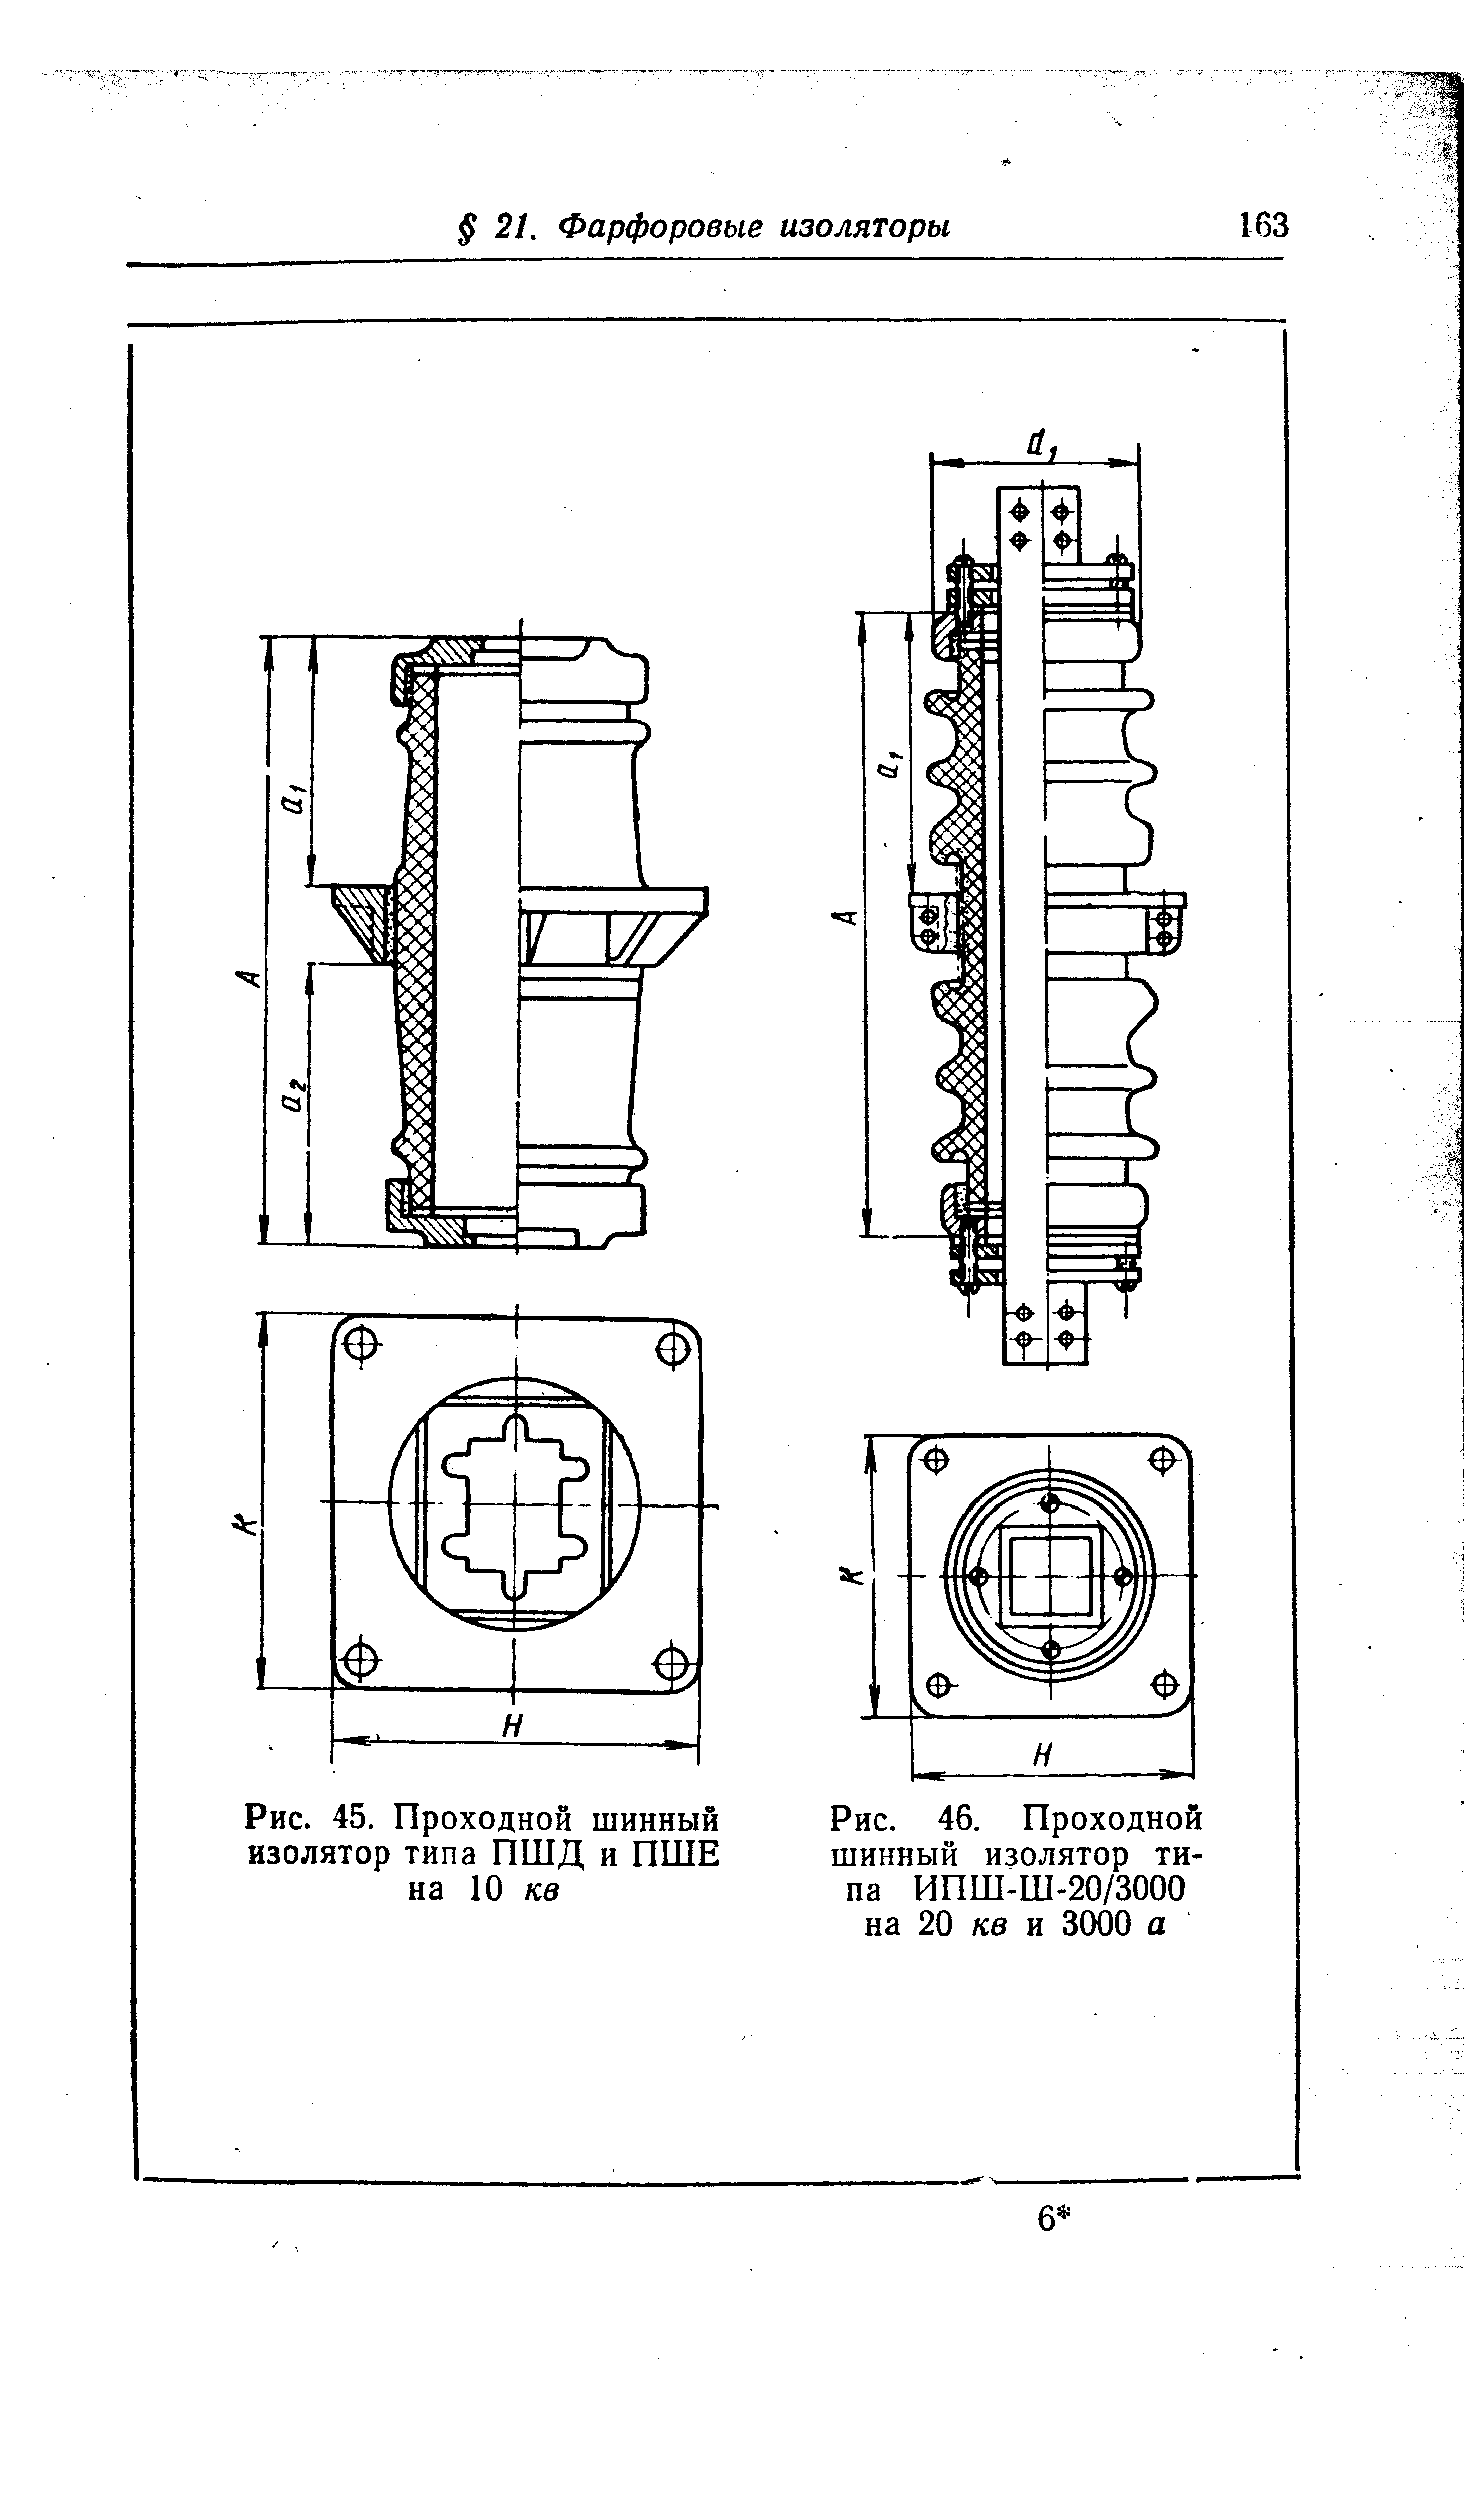 Рис. 45. Проходной шинный изолятор типа ПШД и ПШЕ на 10 кв
